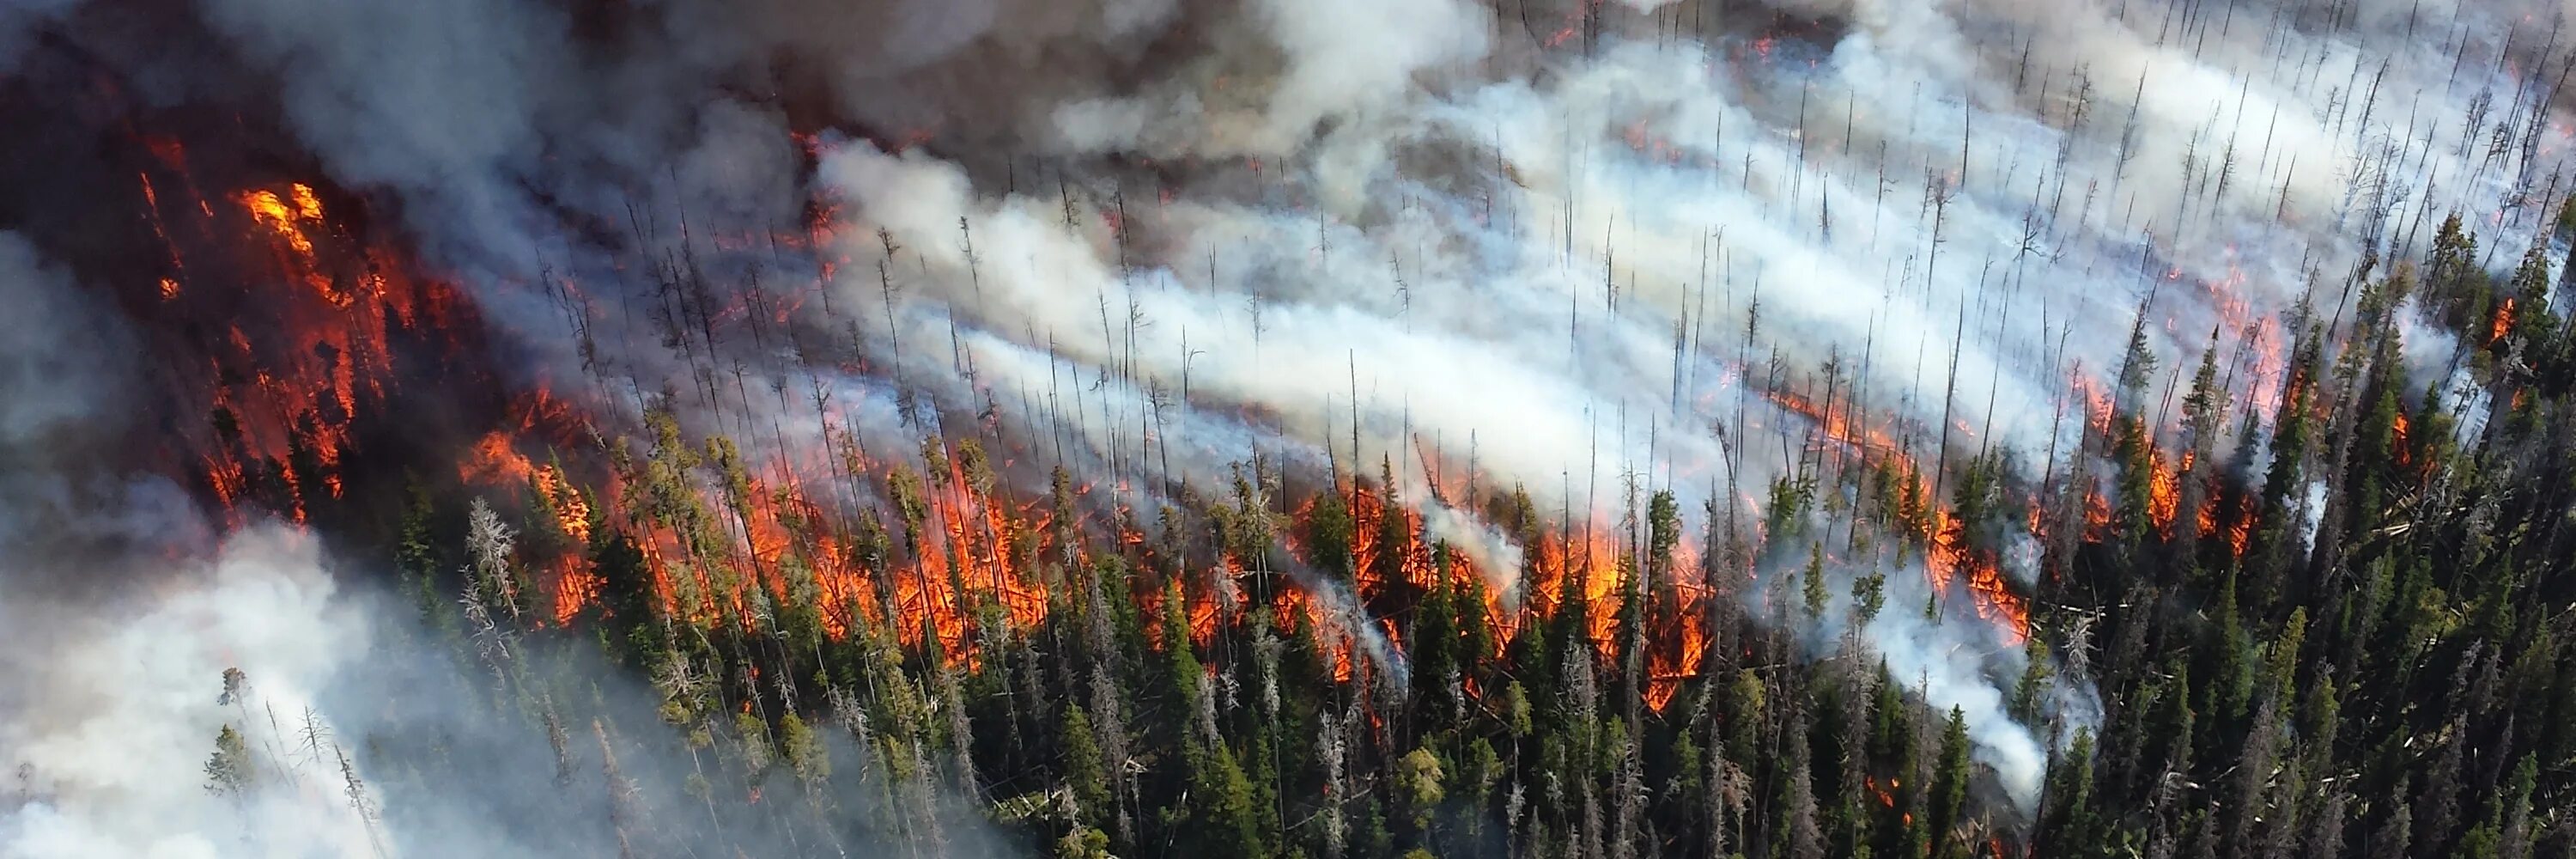 Йеллоустонский национальный парк пожары. Пожар на природе. Загрязнение атмосферы пожарами. Загрязнение воздуха лесными пожарами. Газ горящий воздух